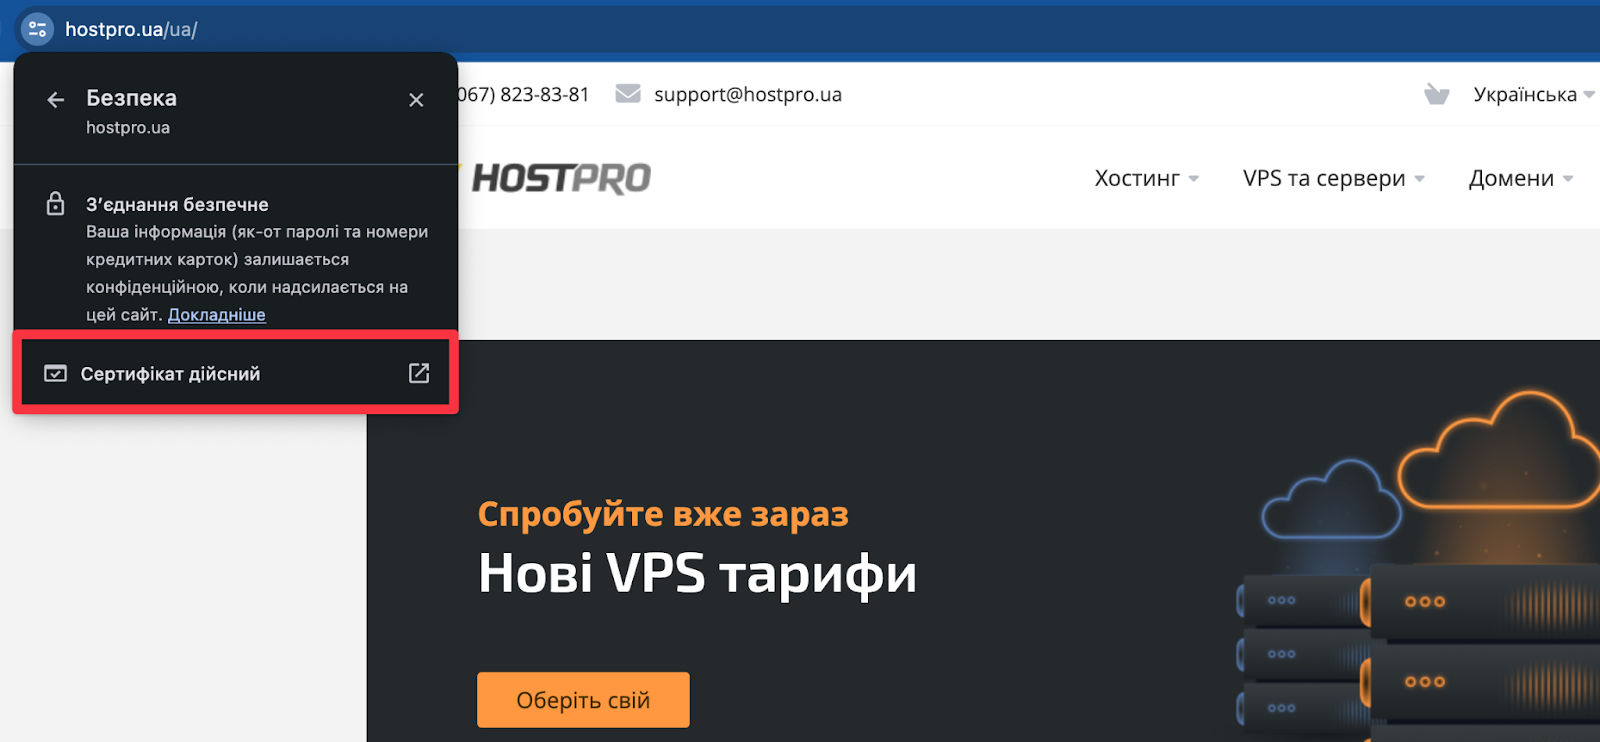 SSL-сертифікат на сайті. Де подивитися? | Блог HostPro 